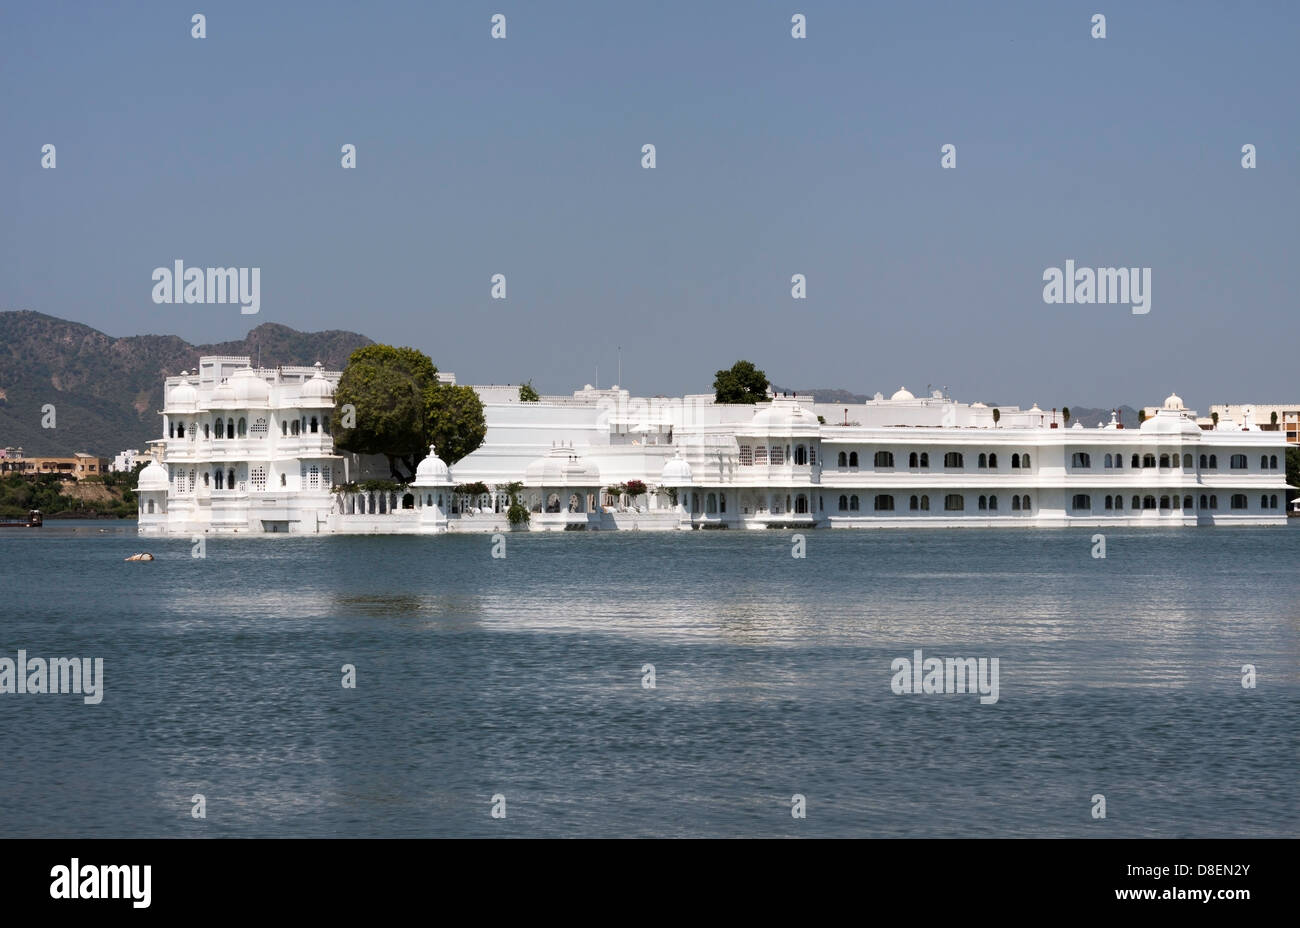 Lake Palace Hotel dans les eaux du lac Pichola à Udaipur. Structure en marbre blanc sur sa propre île dans le lac, très belle Banque D'Images